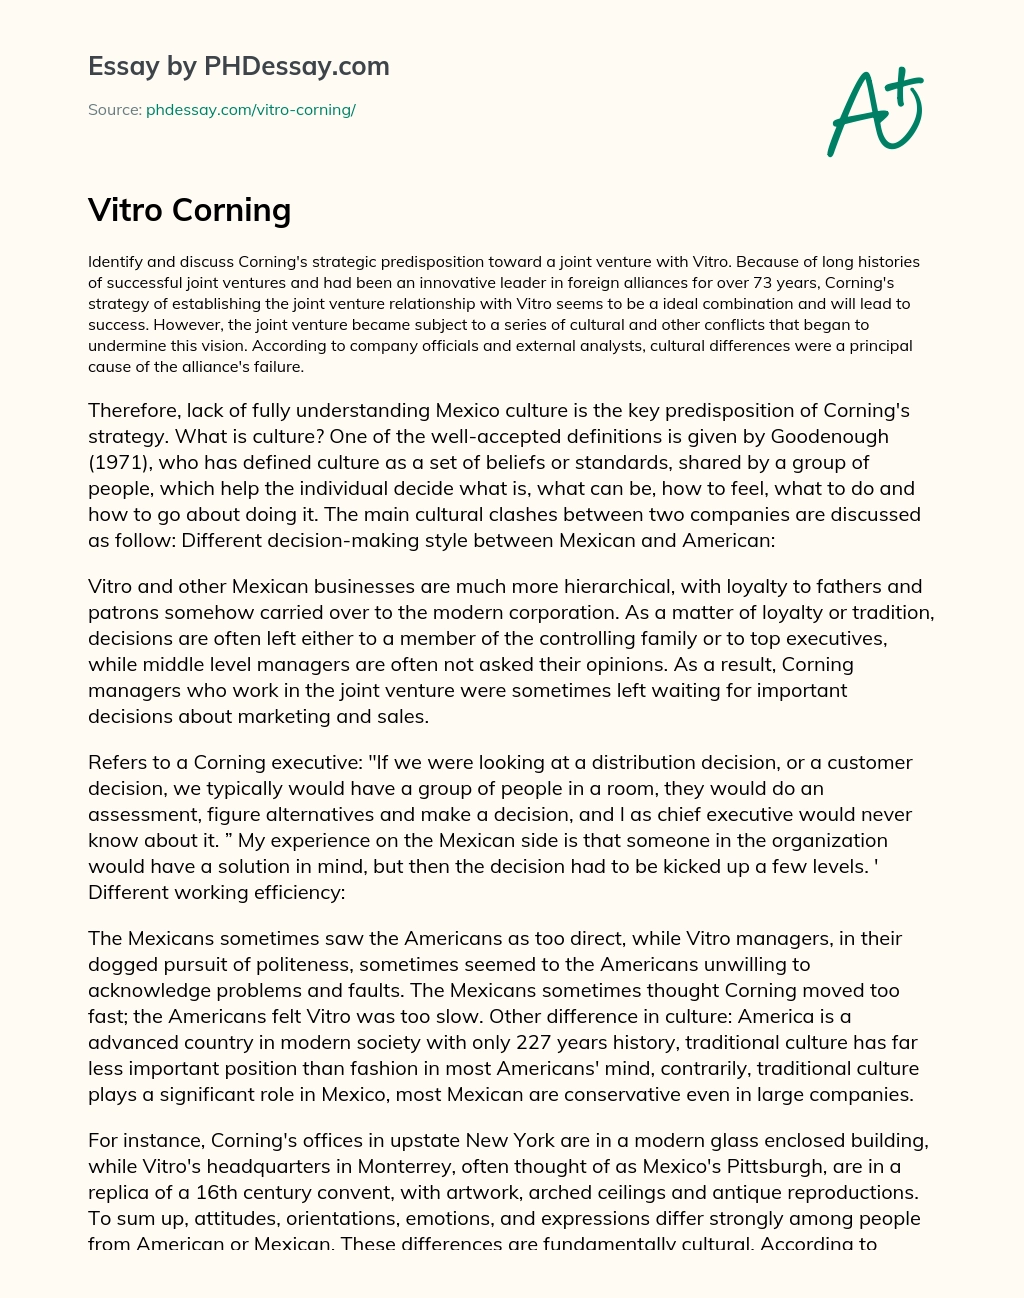 Vitro Corning essay